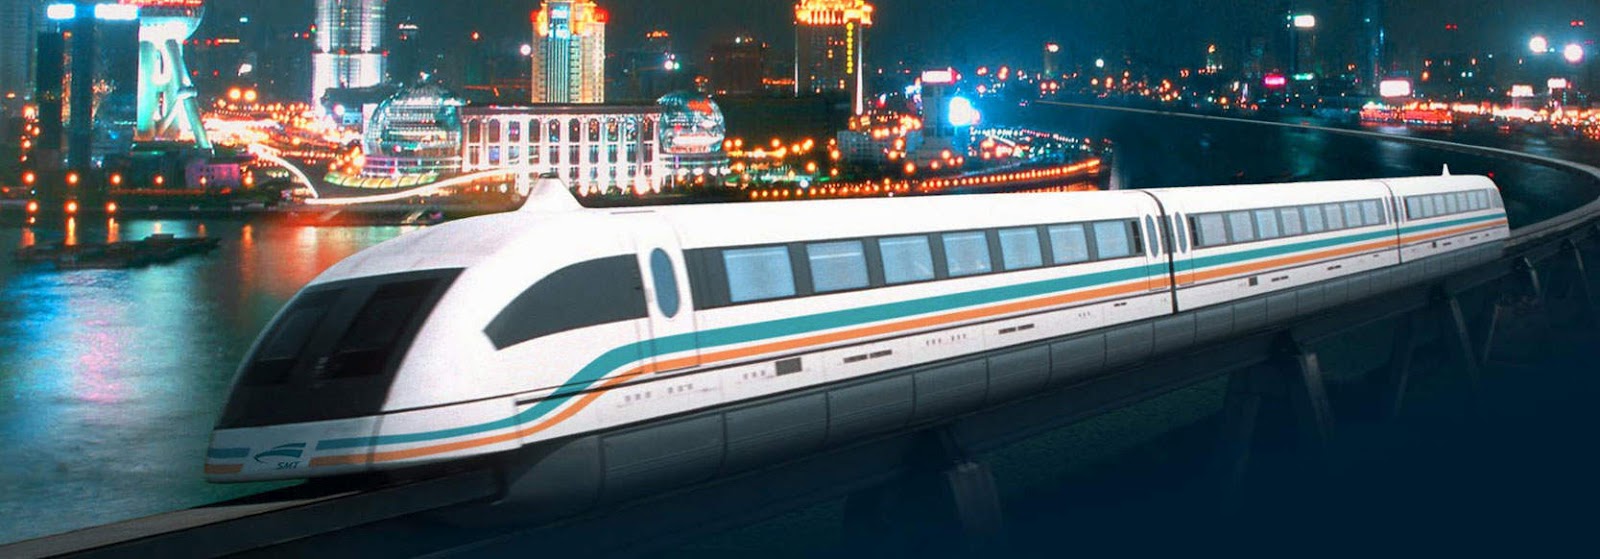 Поезд 300 км в час. Маглев Шанхай. Поезд Маглев в Шанхае. Шанхайский «Маглев» в Китае. Скоростной поезд Маглев.